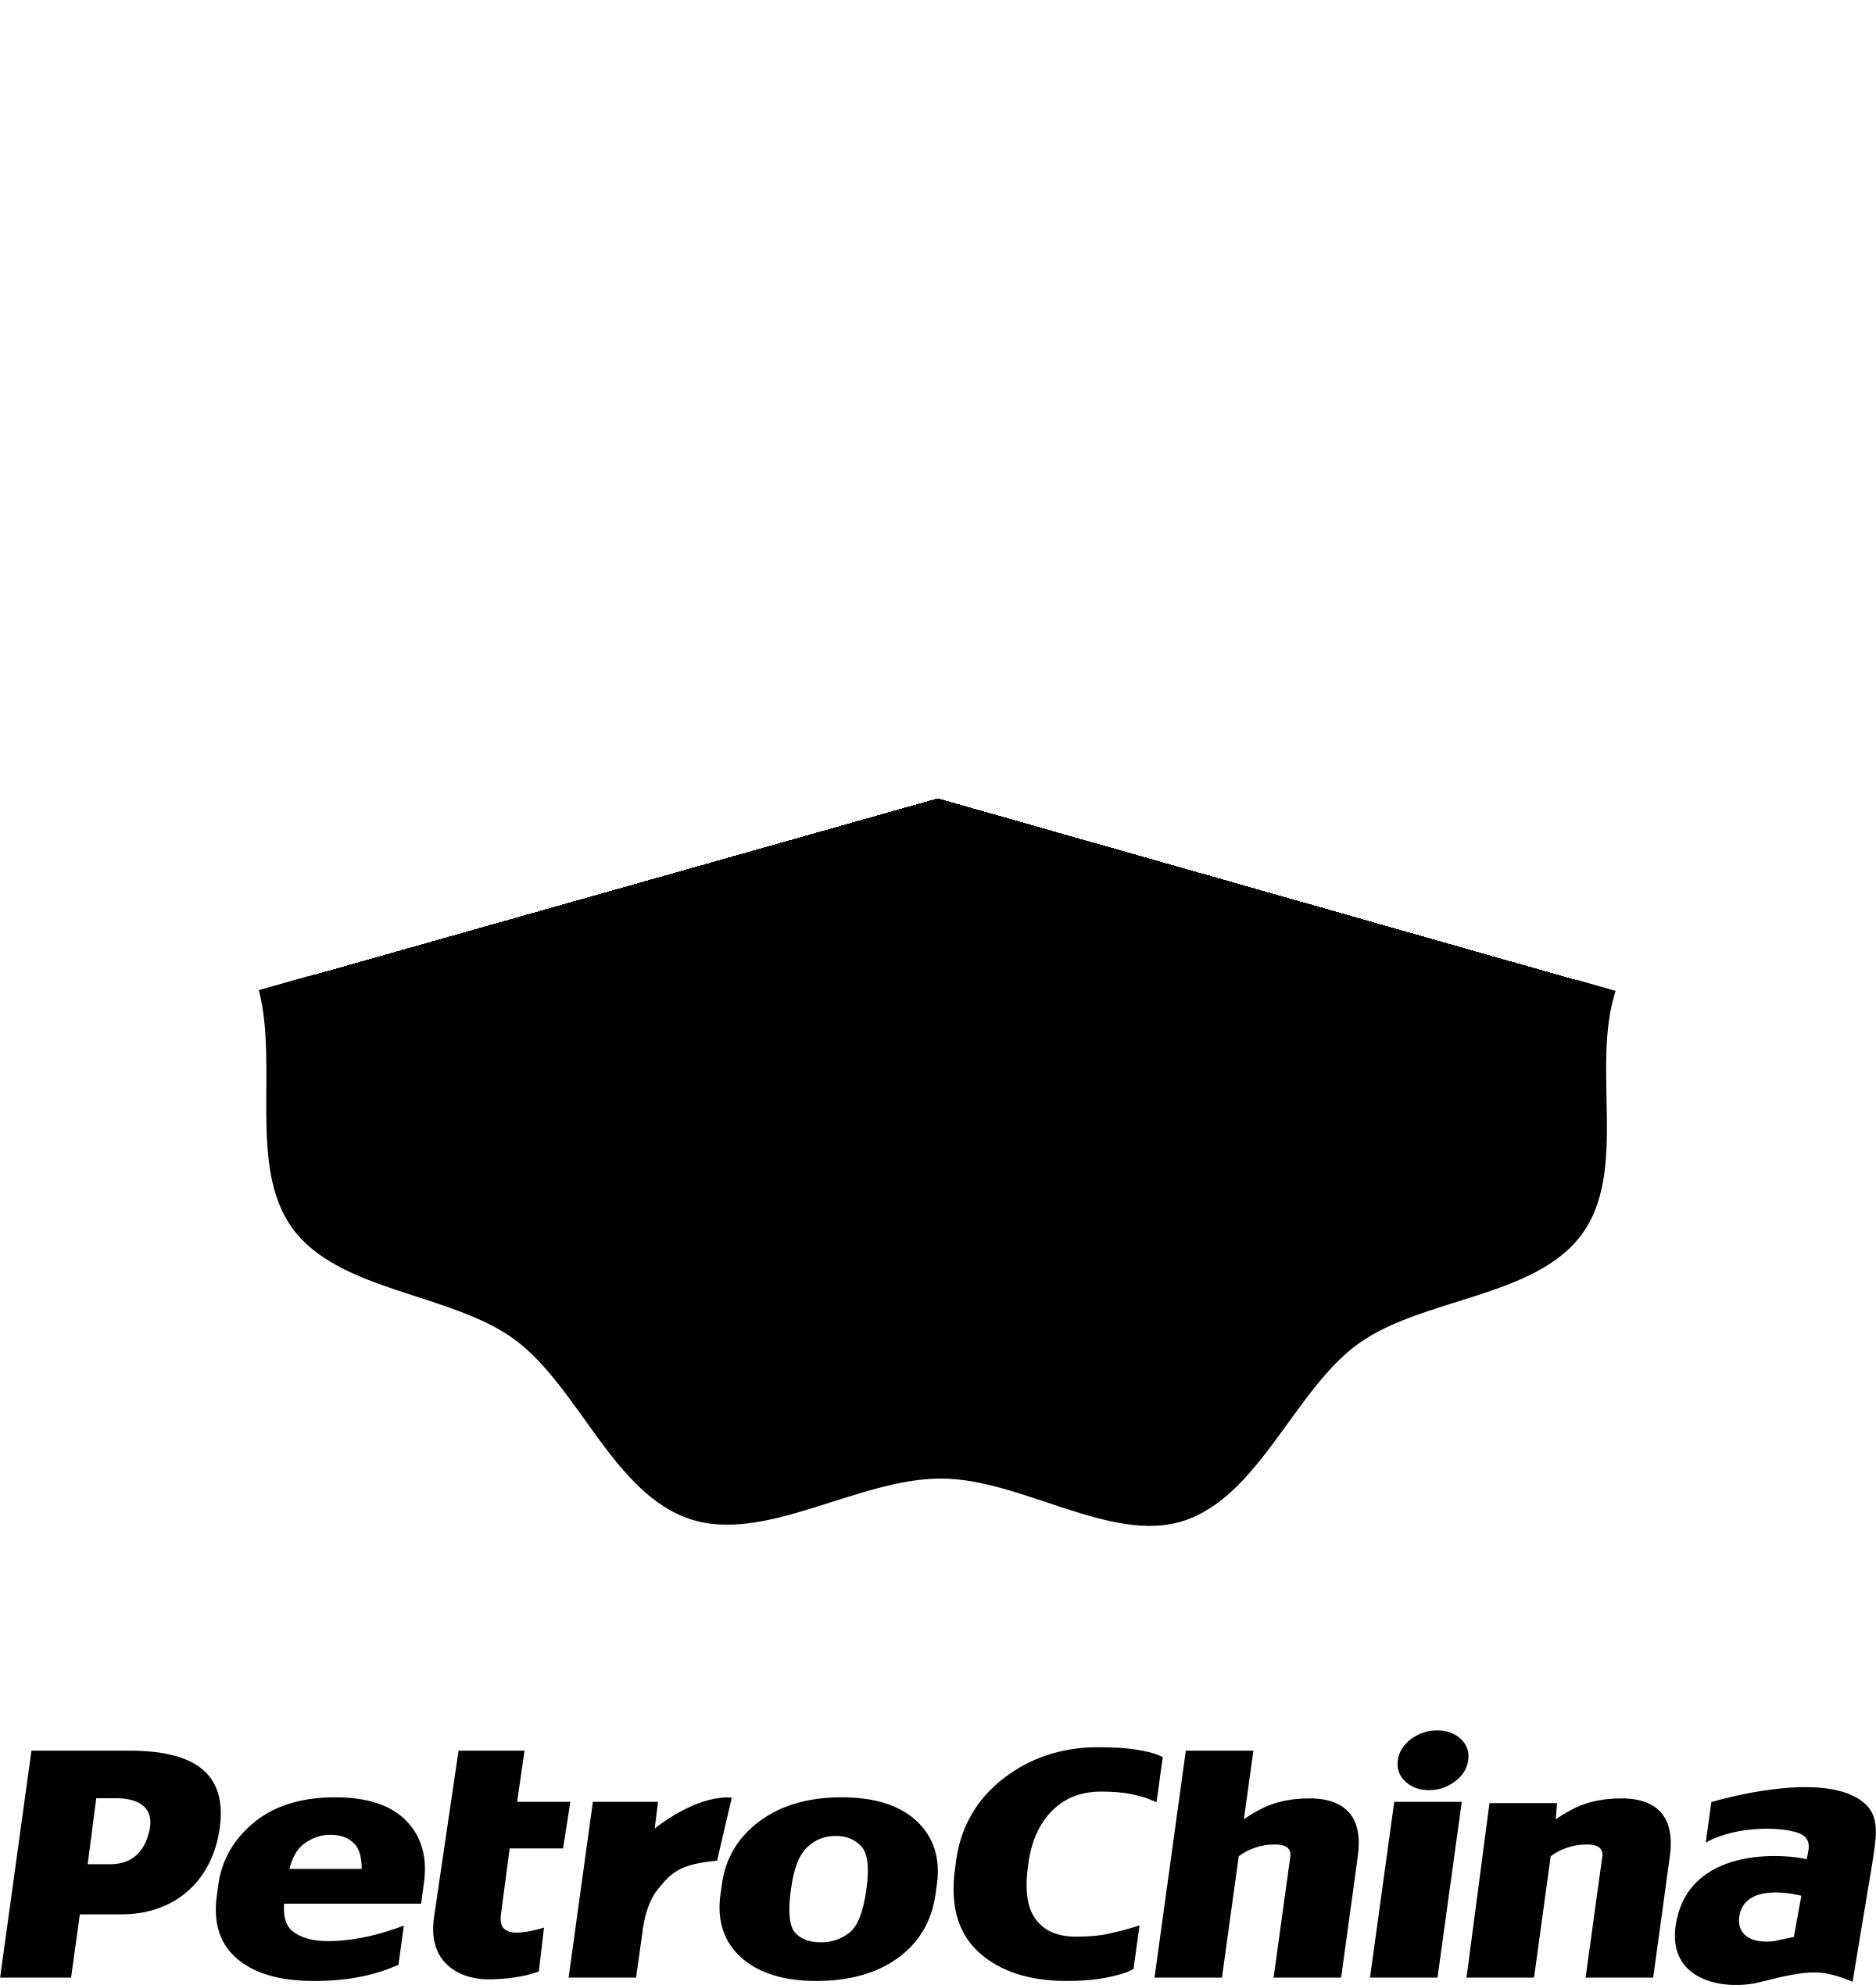 PetroChina Logo Background PNG Image